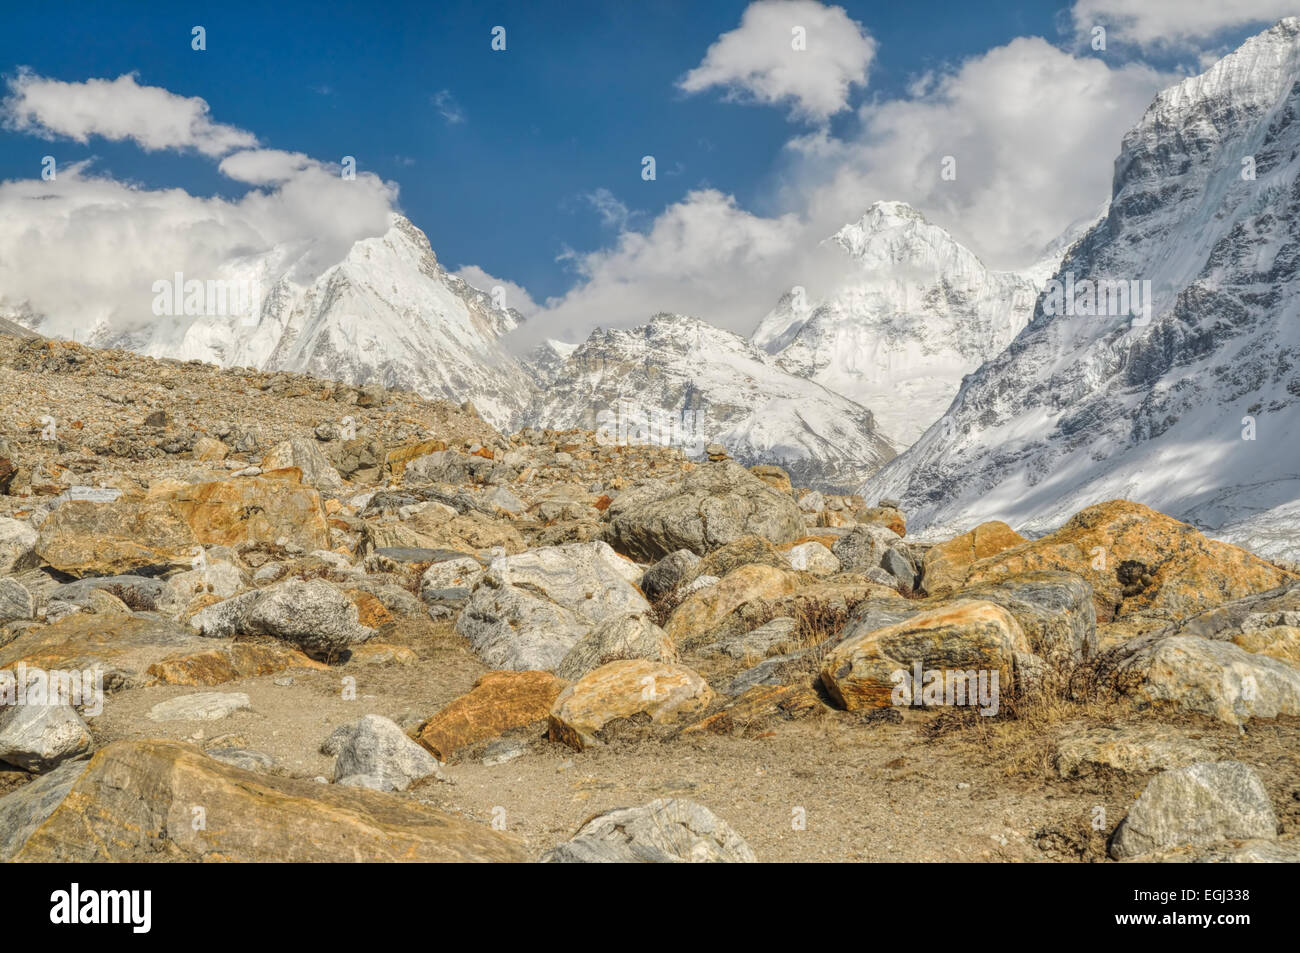 Vista panoramica delle montagne innevate digradanti in una valle rocciosa Foto Stock